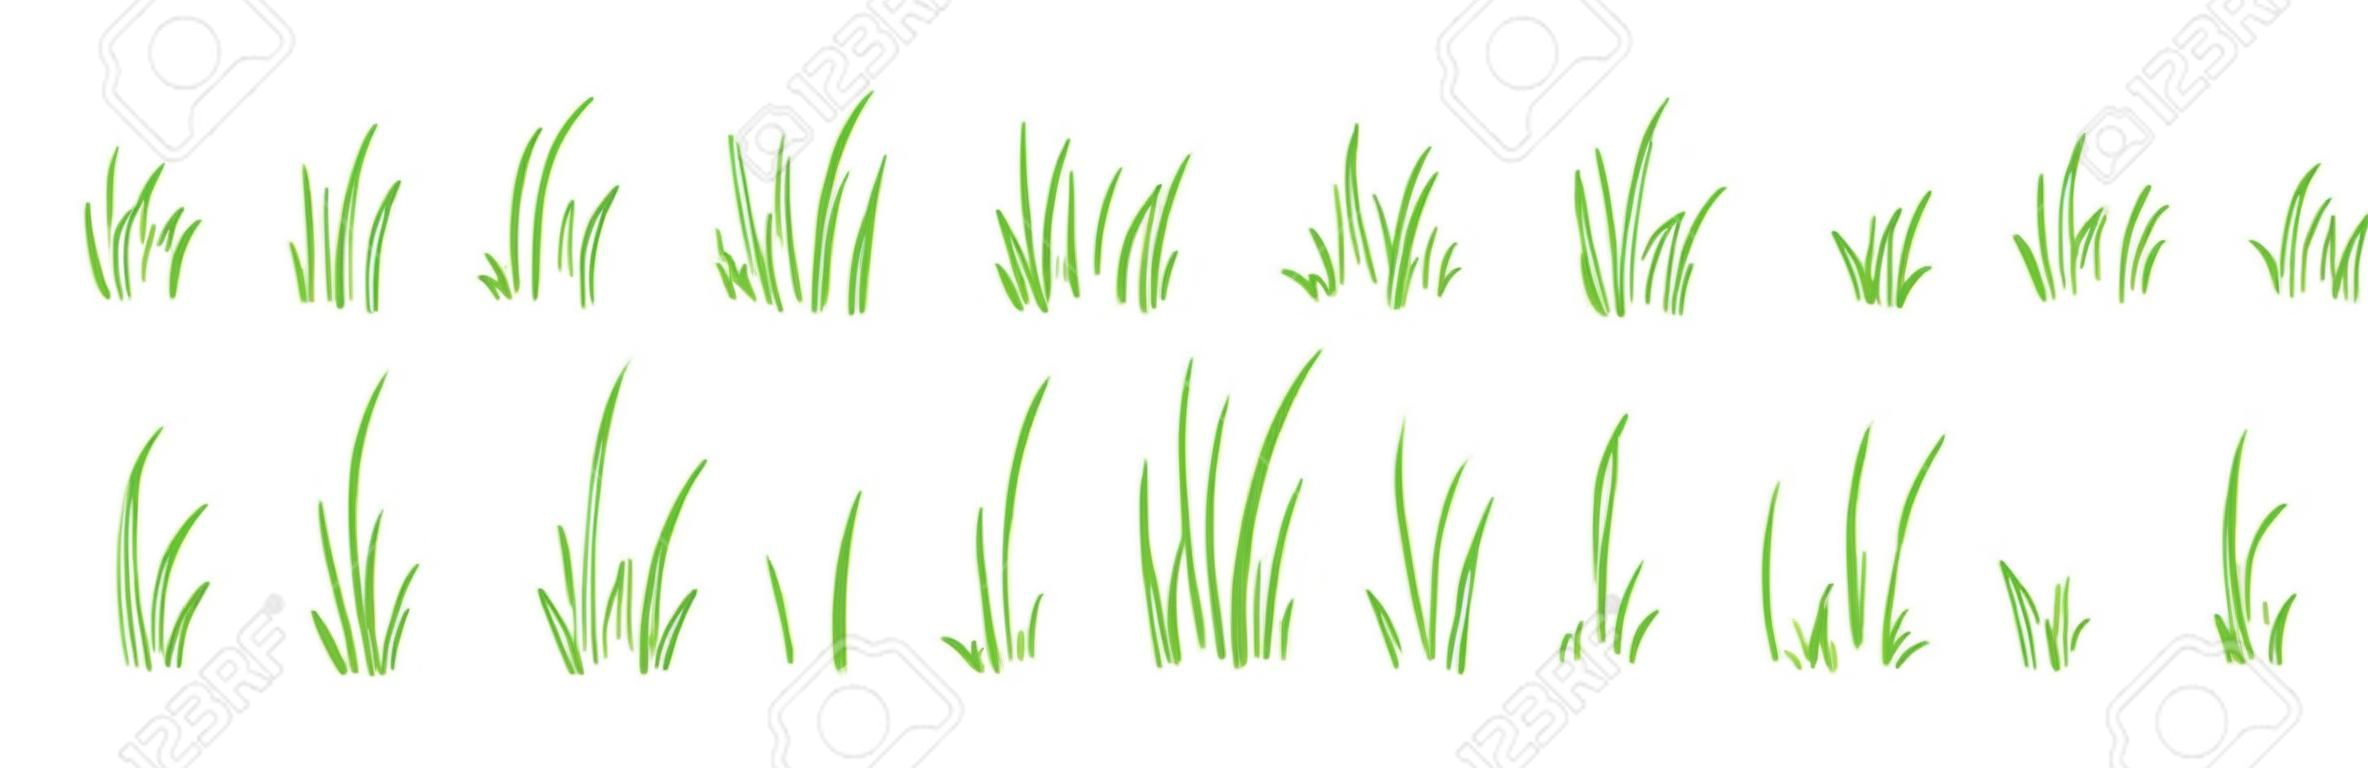 Grasbuschlinie Vektorsatz handgezeichnet, Skizzenelemente Wiese und Landschaft, Scribble-Rasen, grüner Randentwurf isoliert auf weißem Hintergrund. Abbildung der Natur